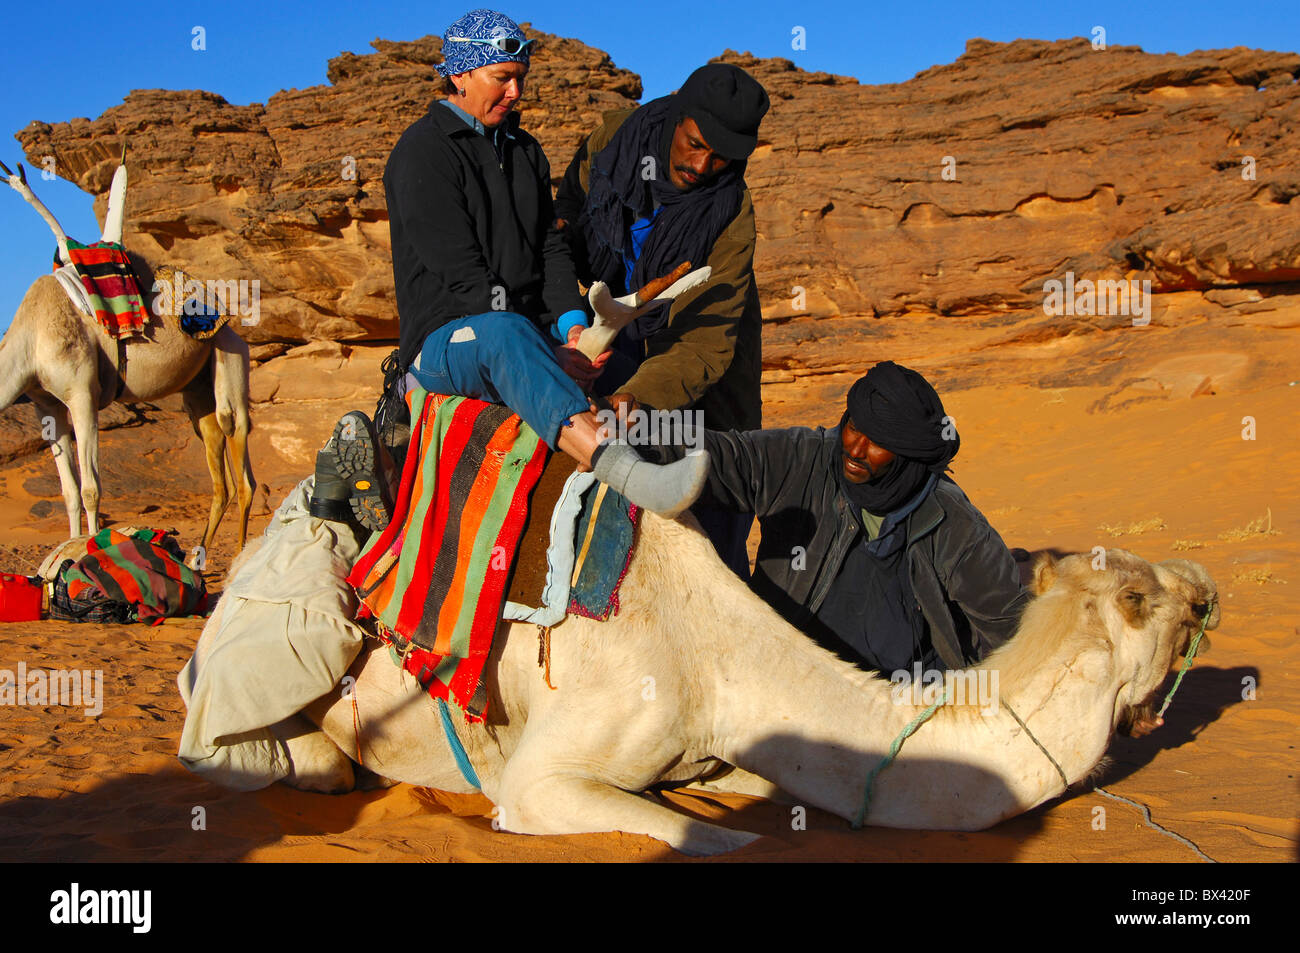 Les nomades touaregs aider un touriste femelle à monter sur un dromadaire dans le désert du Sahara, montagnes Acacous, Libye Banque D'Images